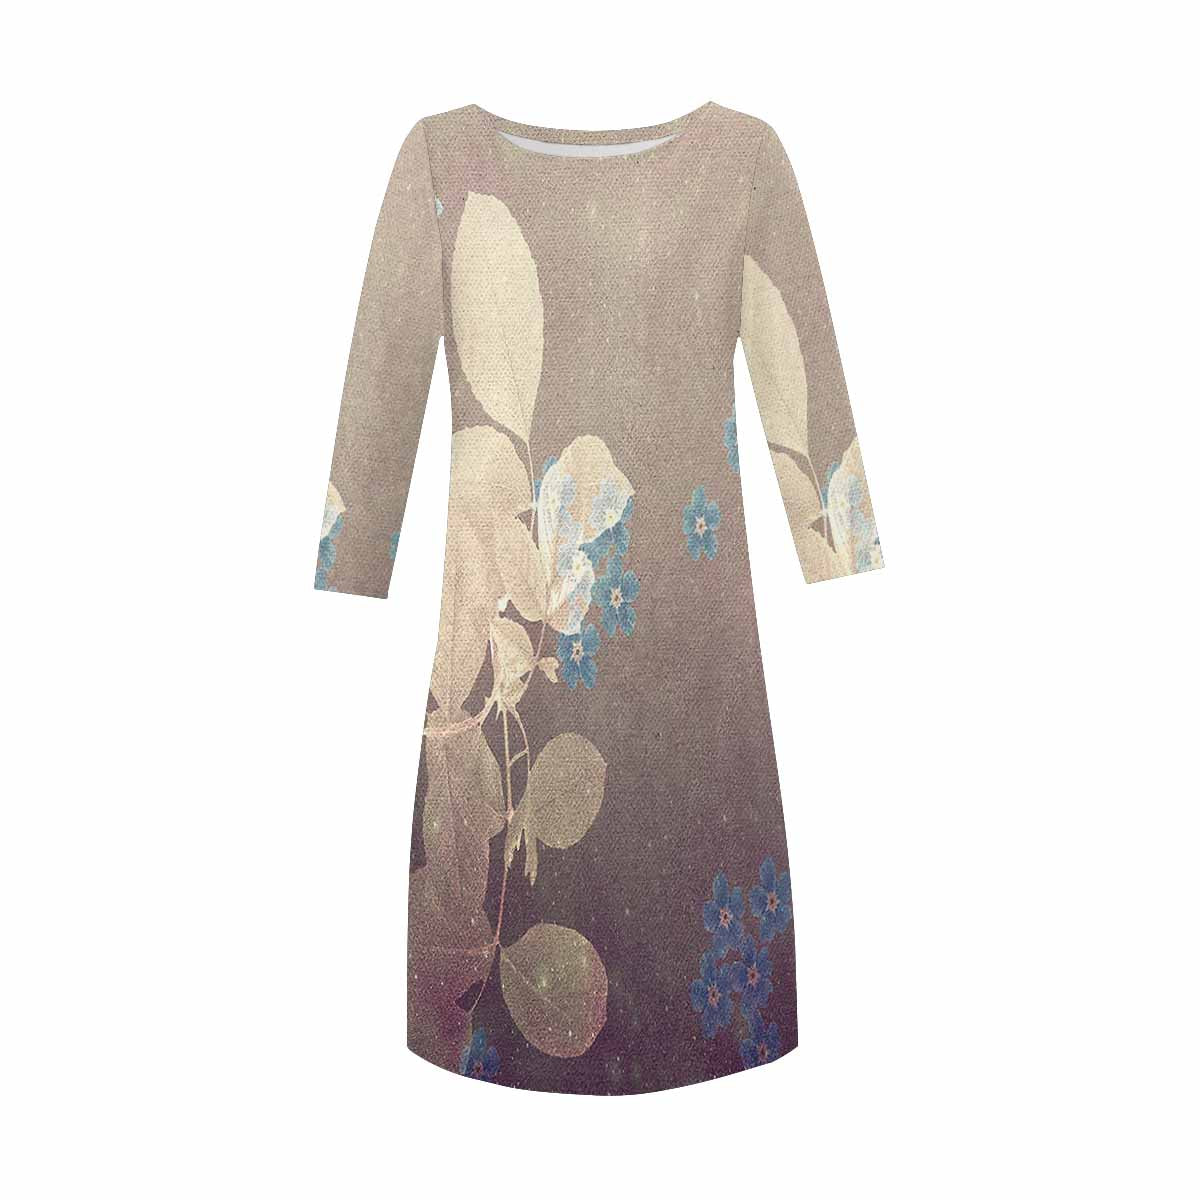 Antique General loose dress, MODEL 29532, design 48